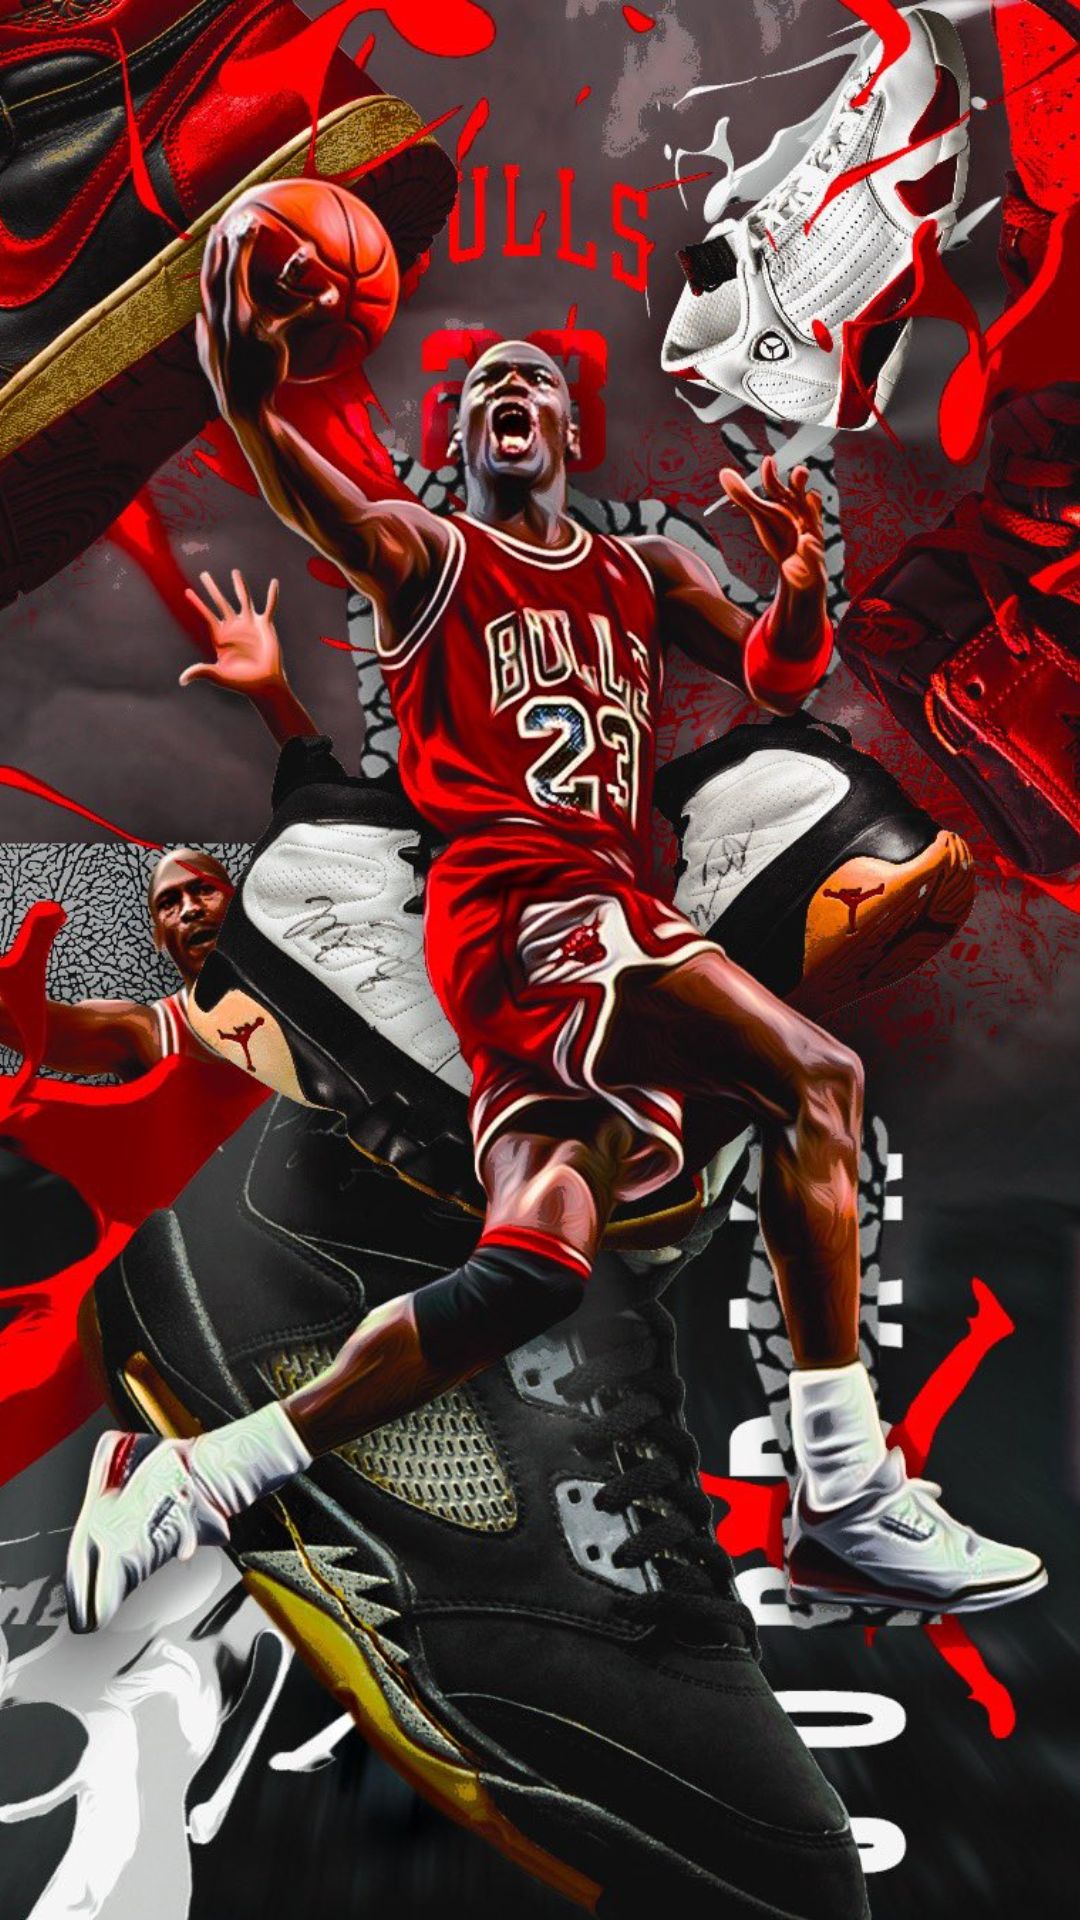 Michael Jordan Hd Wallpapers